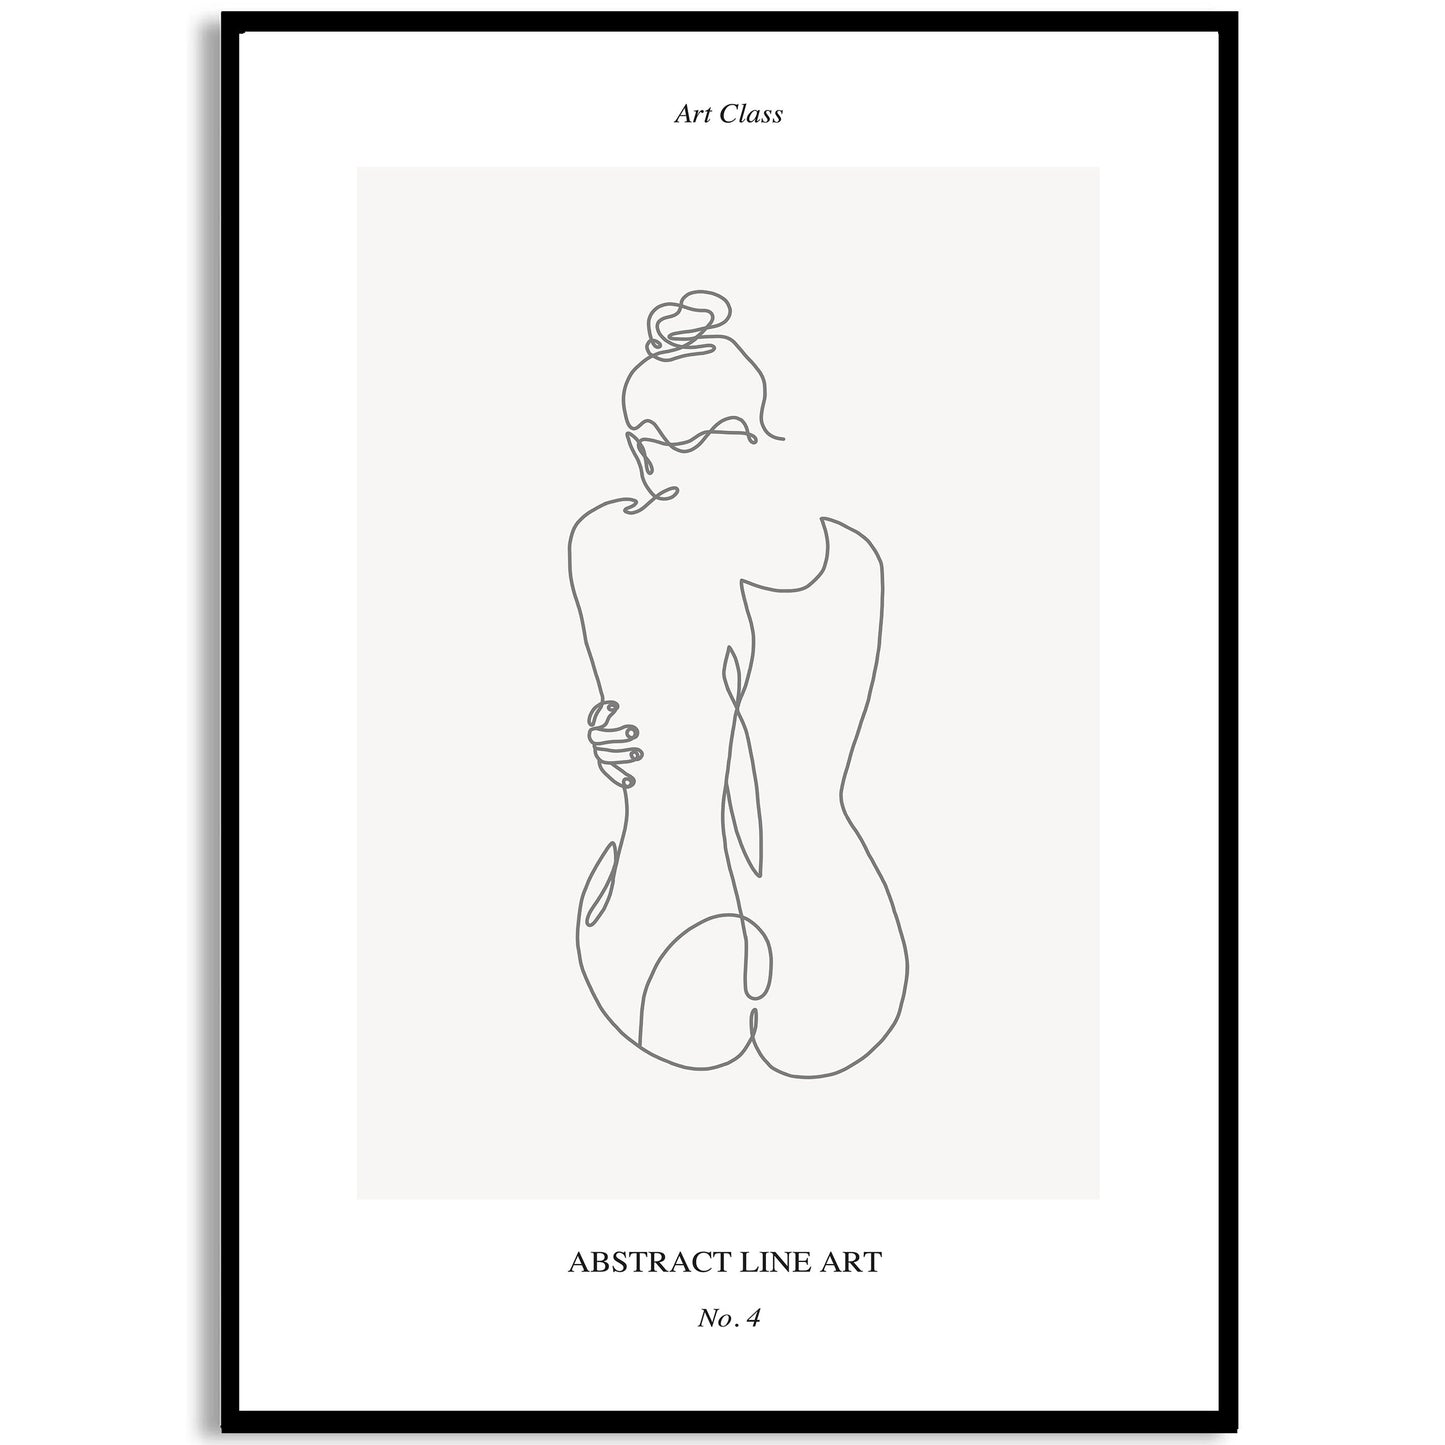 Stampa artistica di una donna nuda